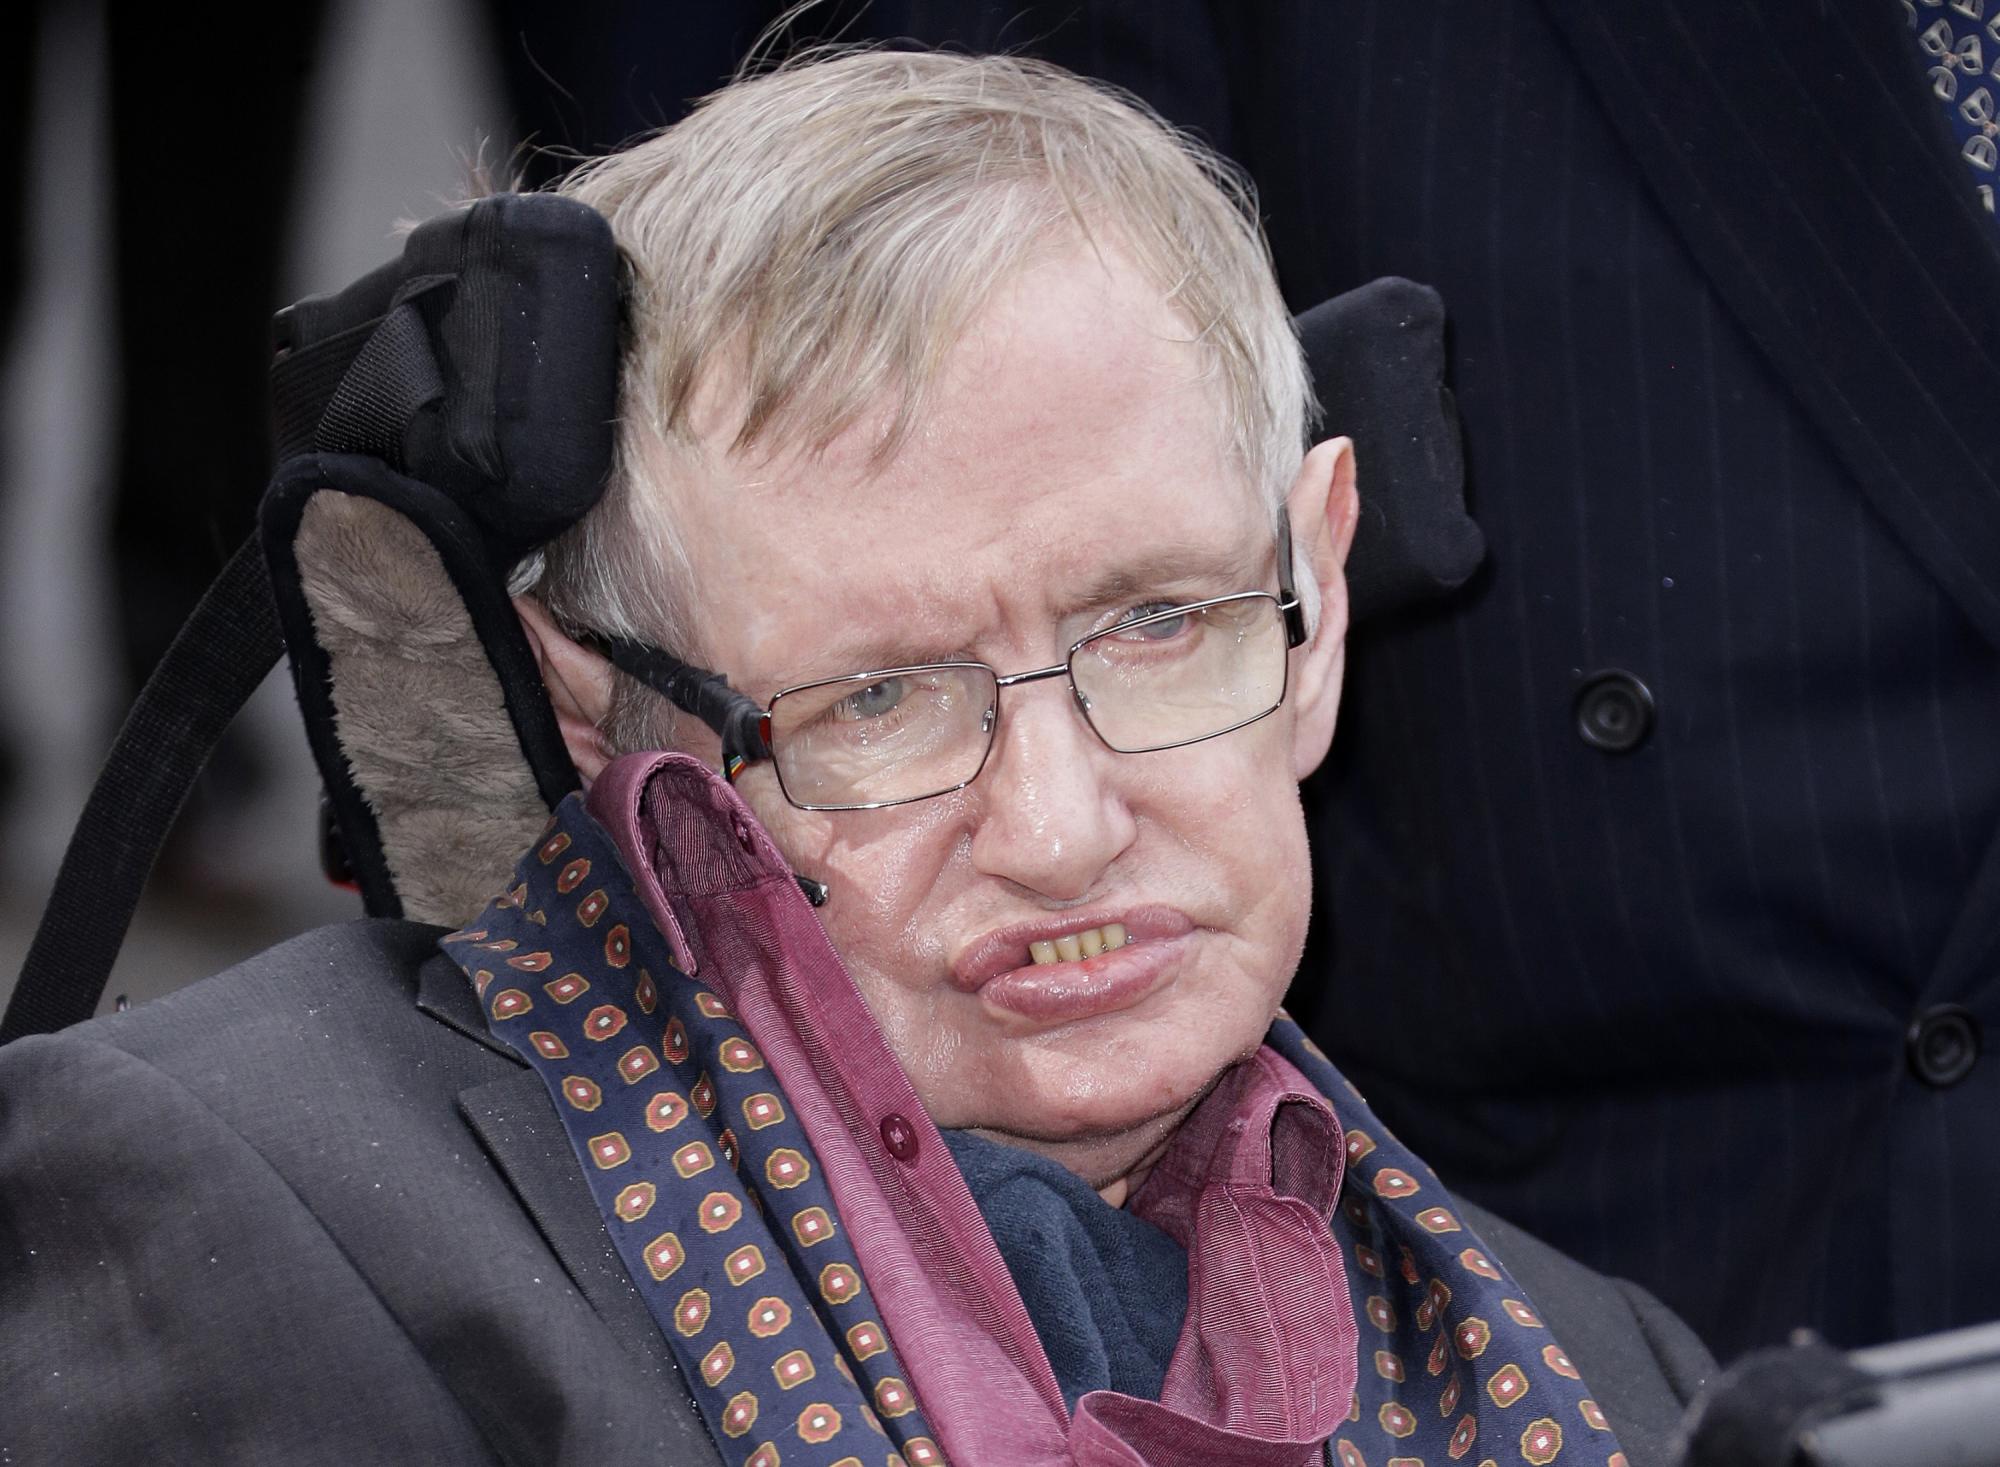 $!El nombre de Stephen Hawking aparece en los documentos revelados esta semana, ligándolo a una supuesta orgía.